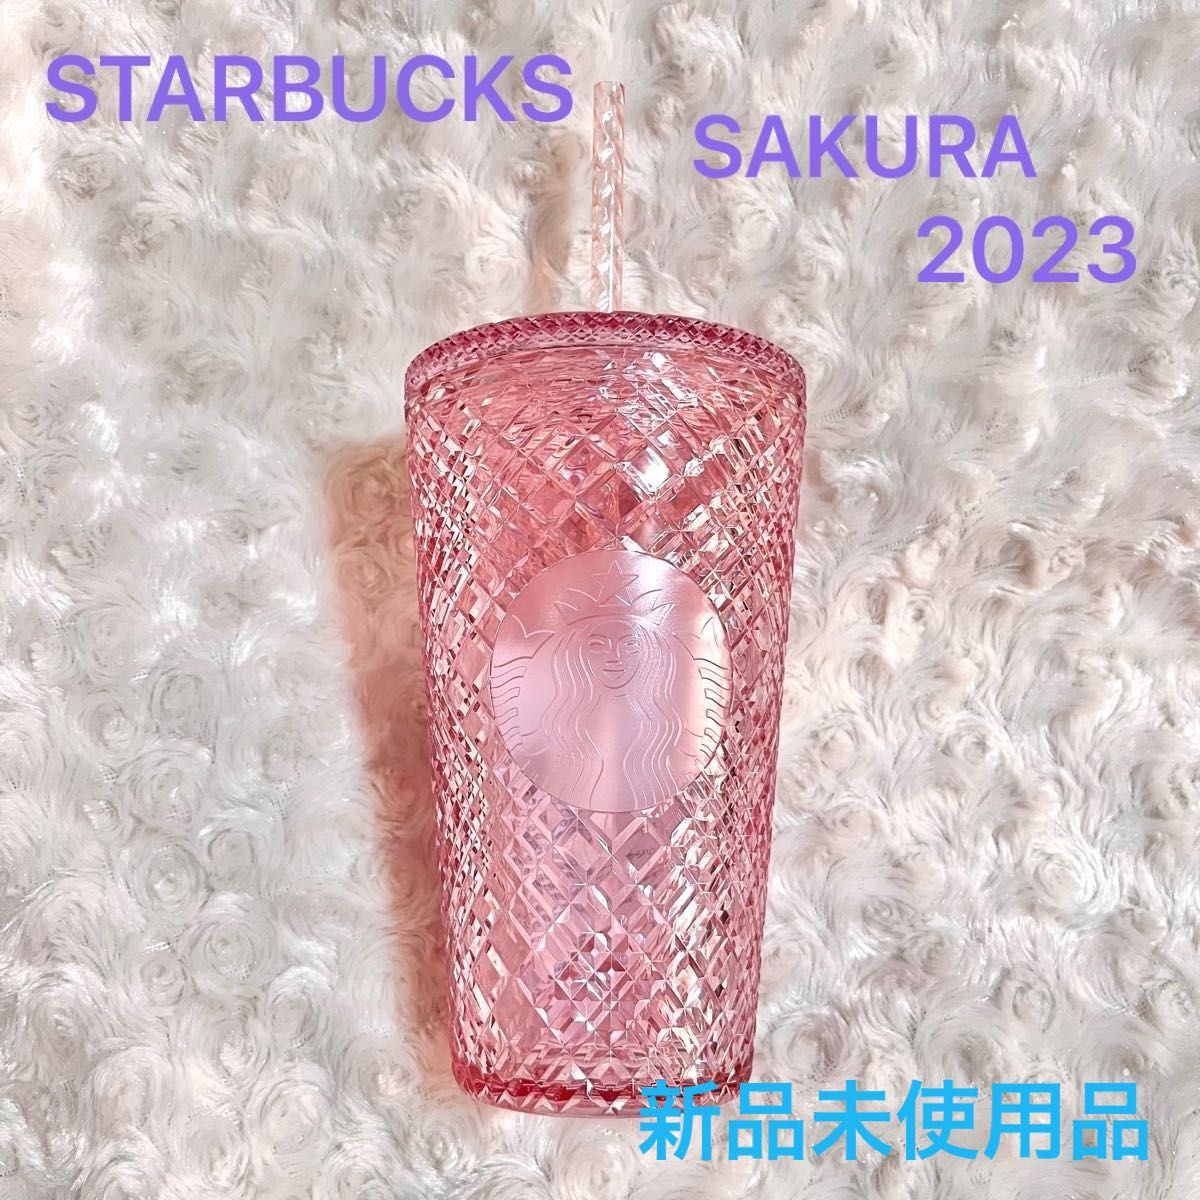 新品未使用品 Starbucks スタバ SAKURA2023 コールドカップタンブラー ピンク 473ml 桜 スタバさくら